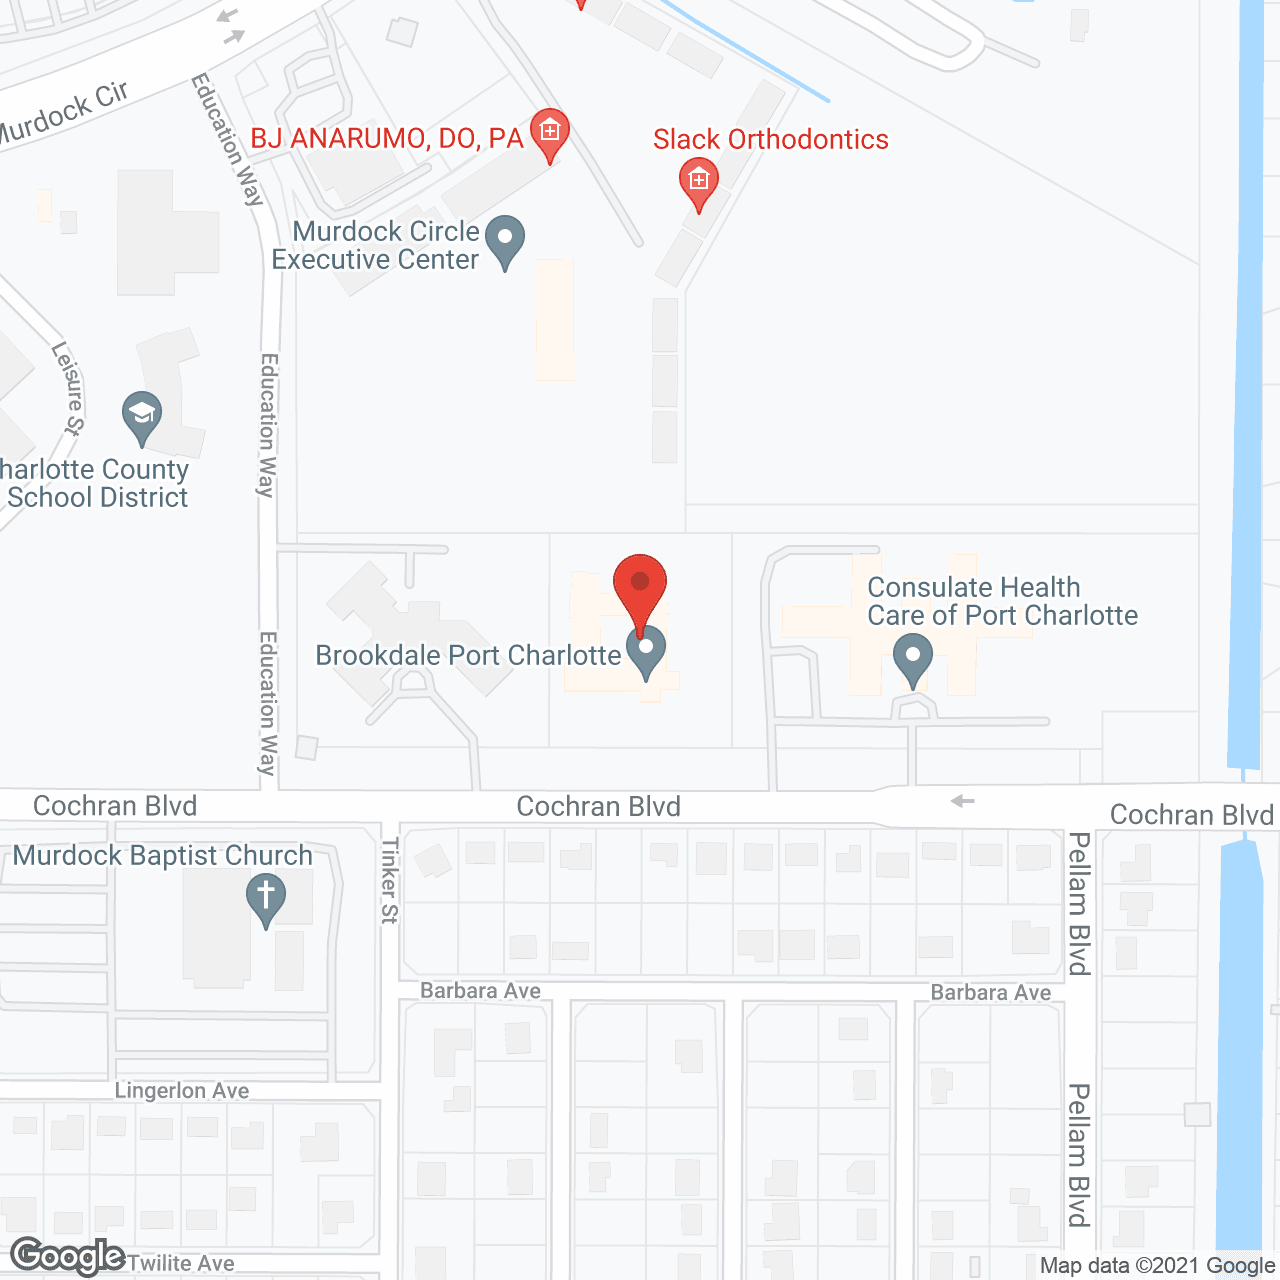 Brookdale Port Charlotte in google map